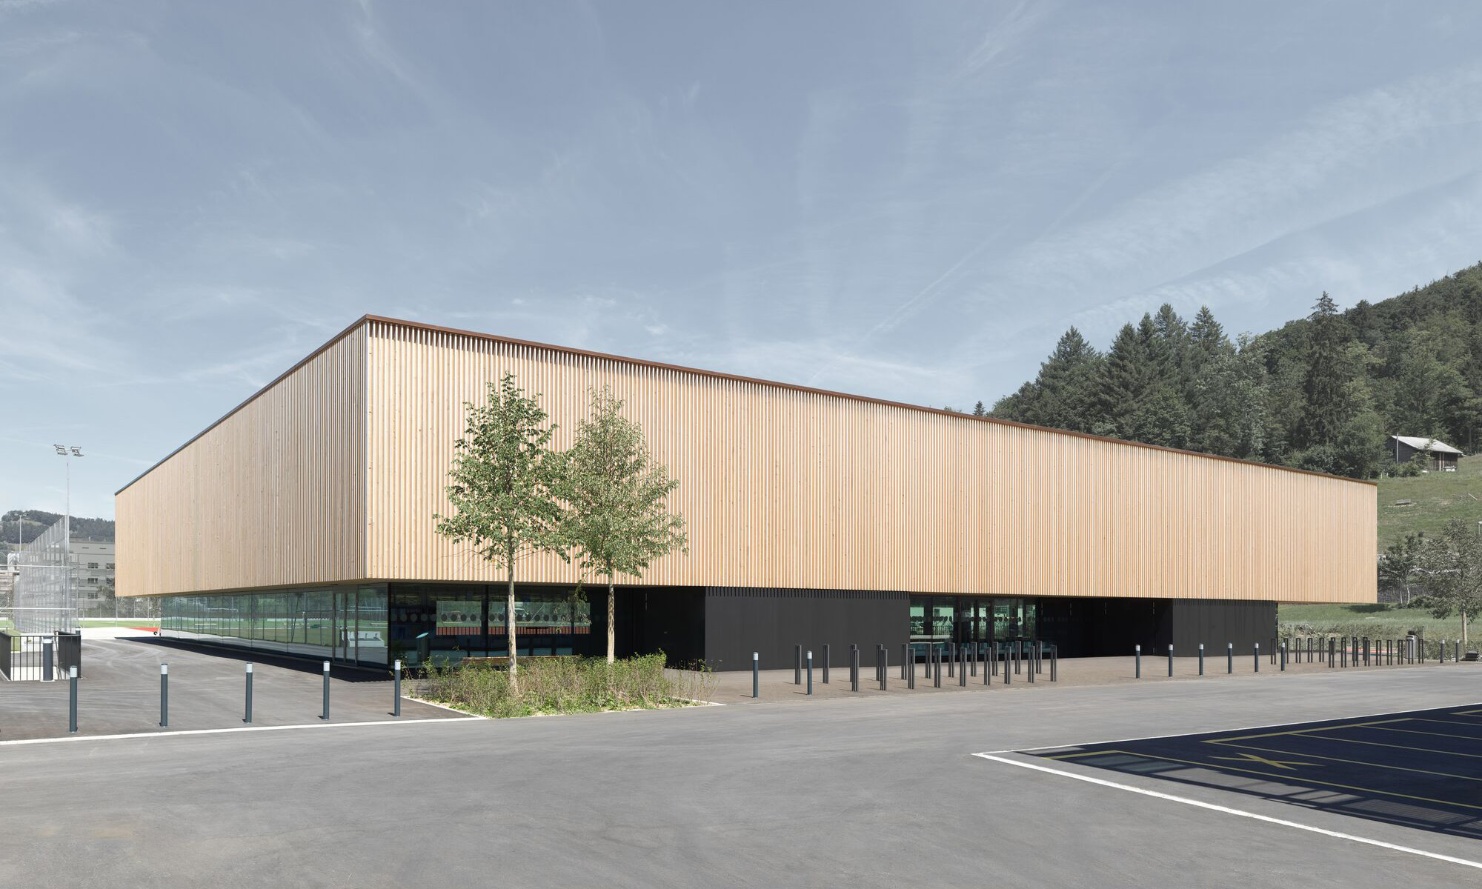 Vue globale de la salle de sport de Rietwis en construction en bois.